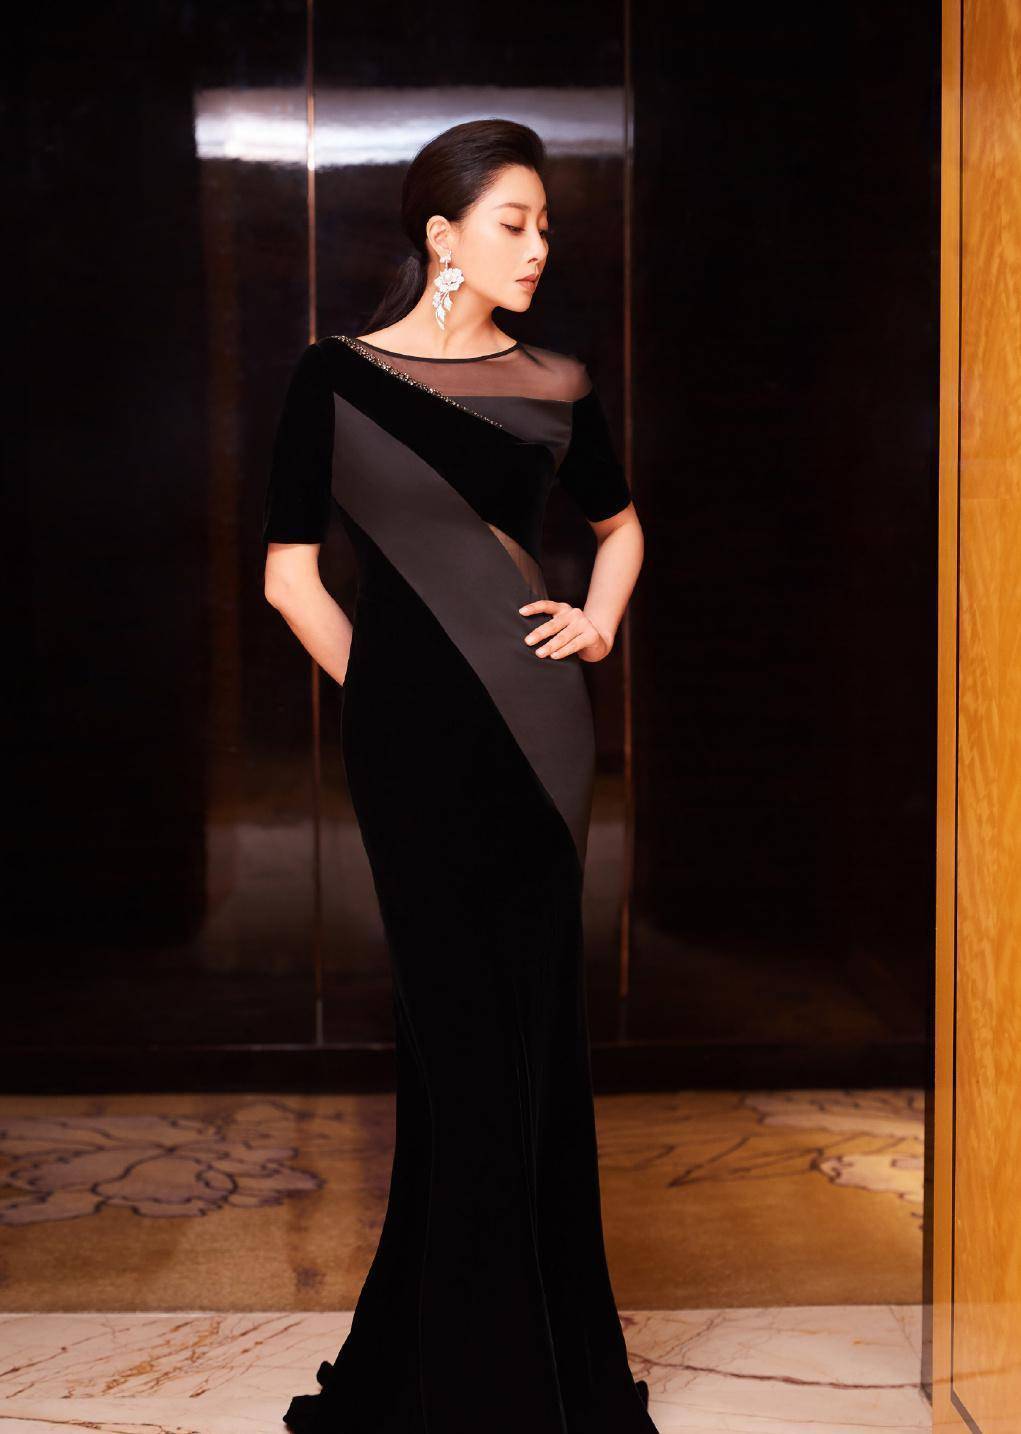 殷桃穿一袭紧身黑裙,气质优雅又高贵,40多岁腰臀比真迷人